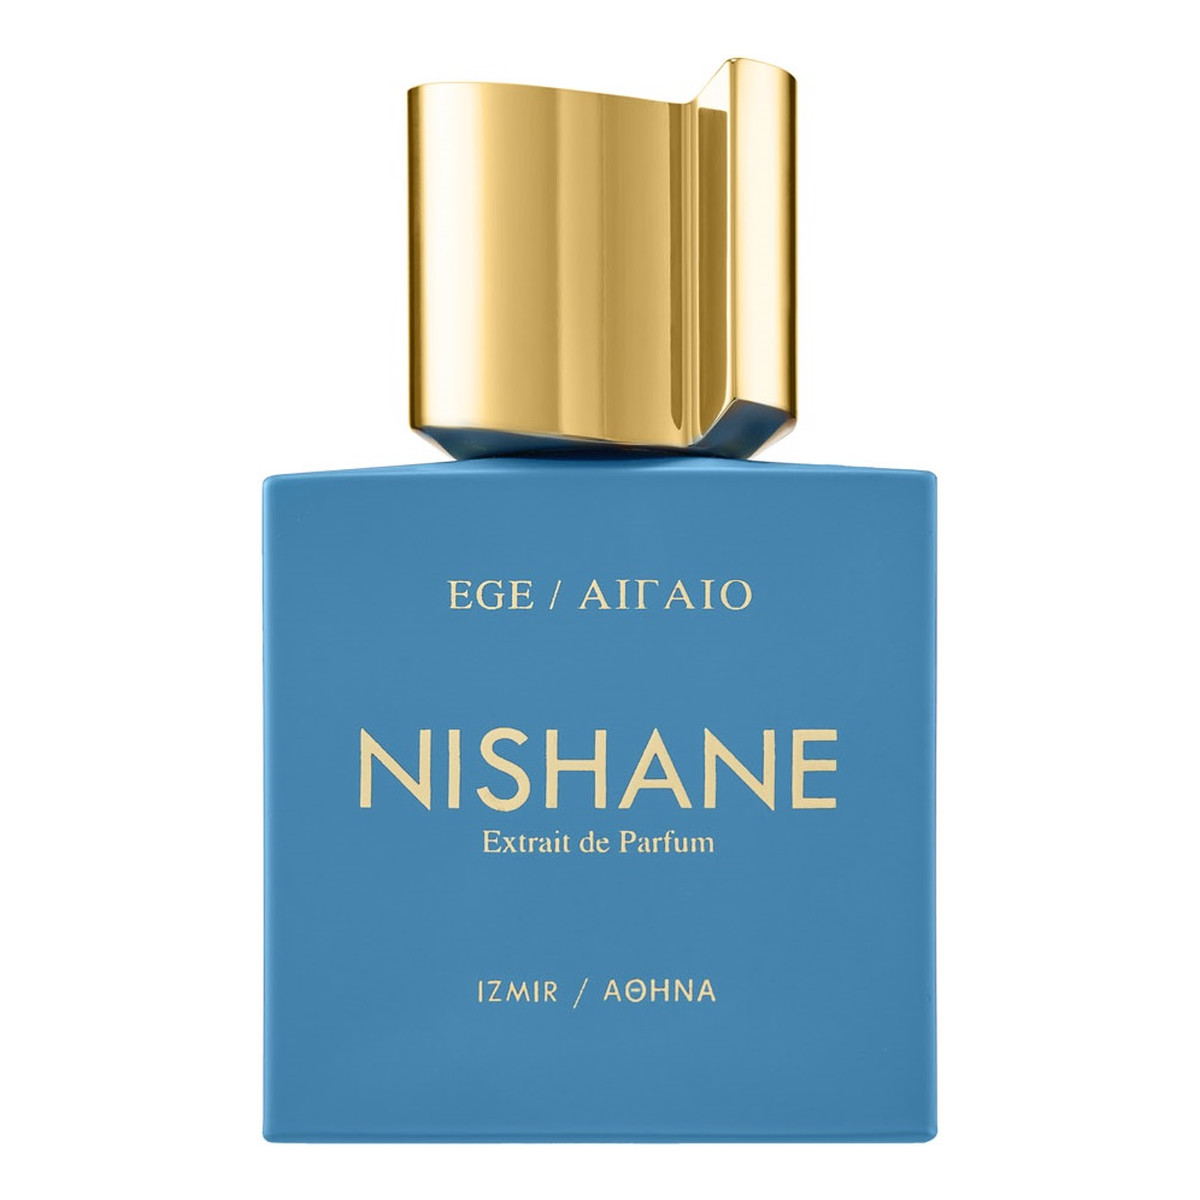 Nishane Ege / ailaio ekstrakt perfum spray 100ml